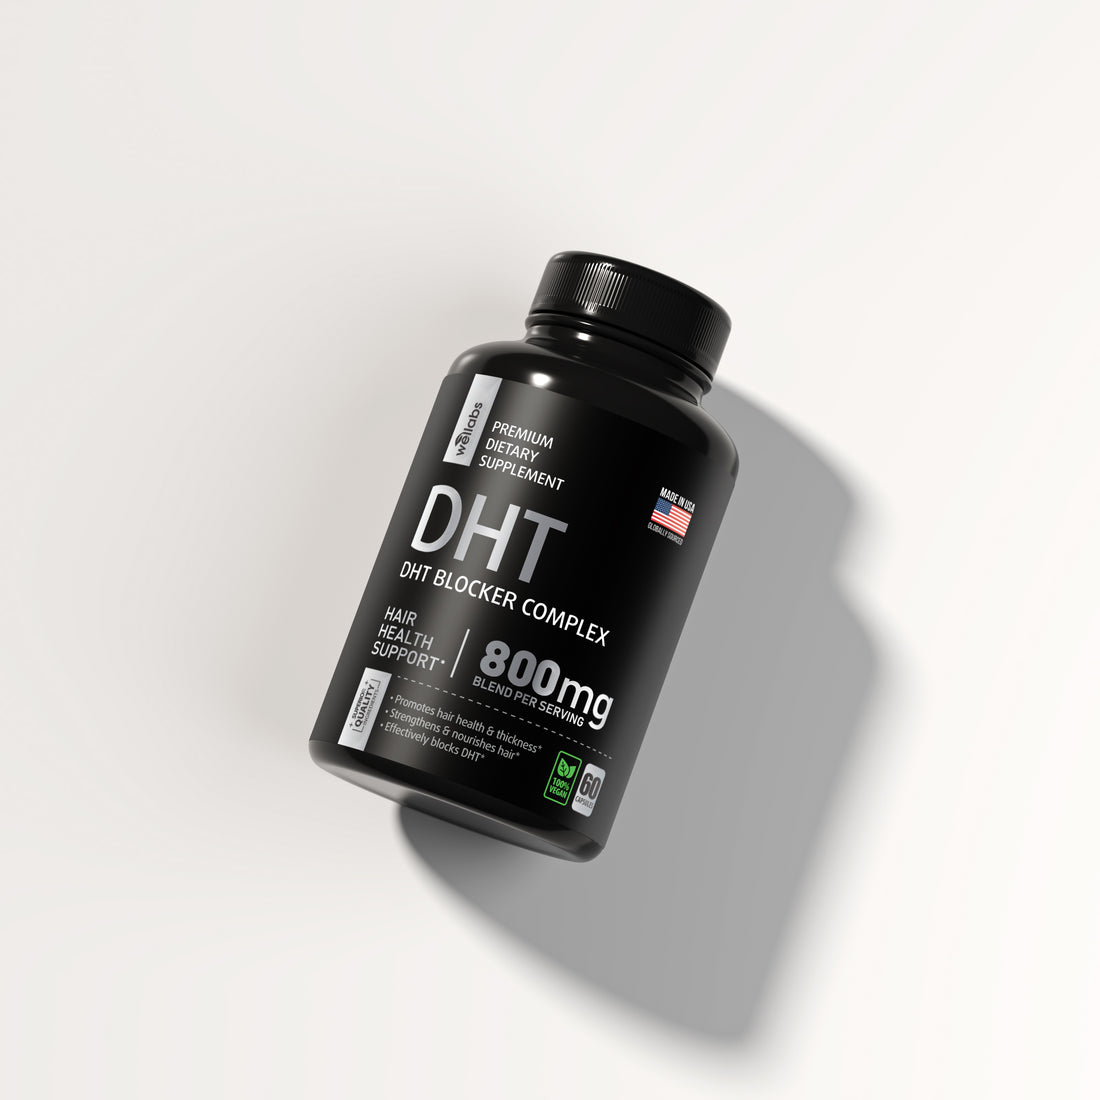 DHT Blocker Supplement